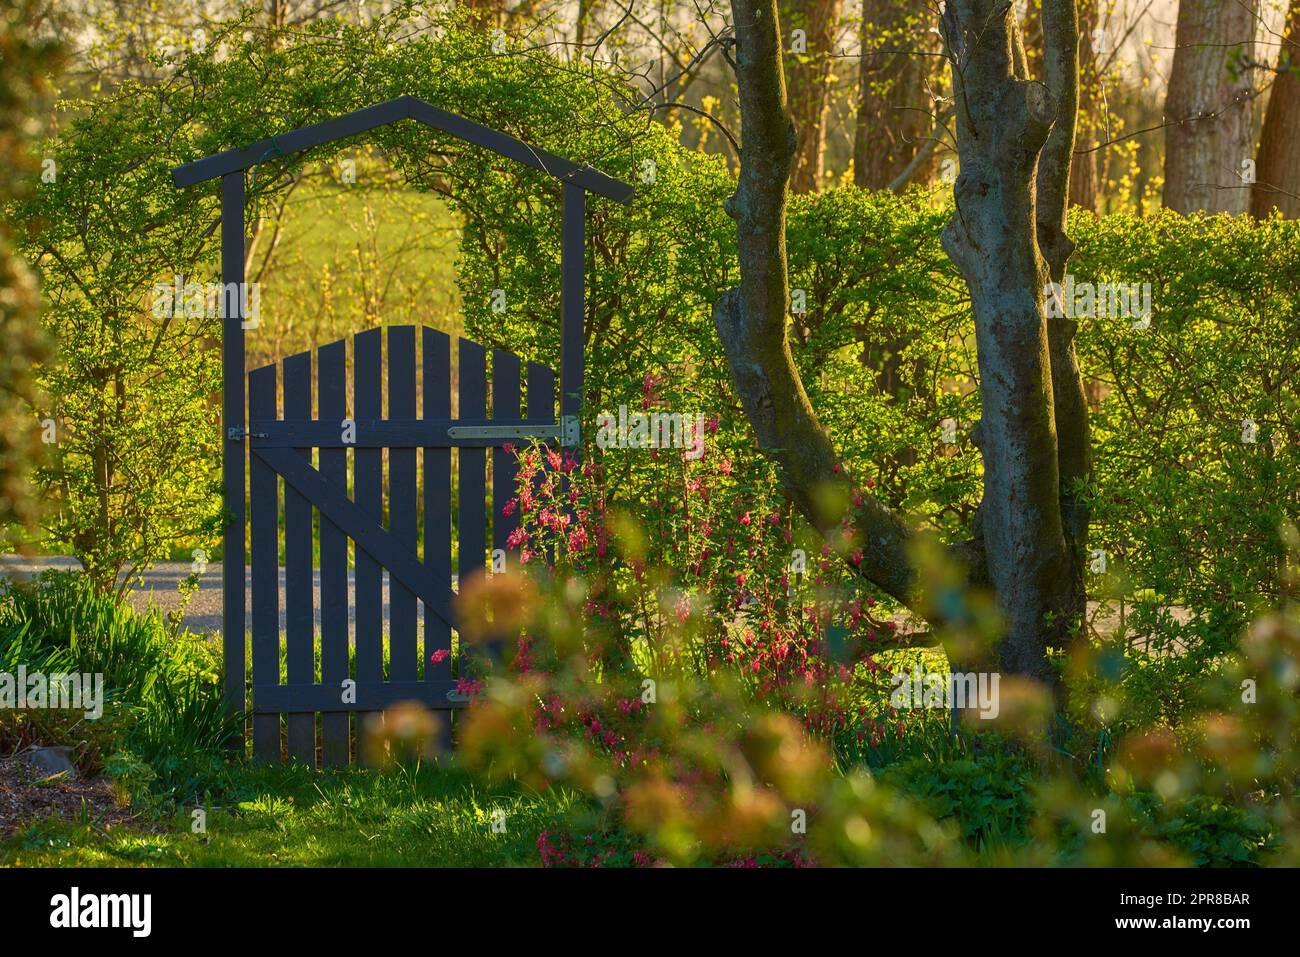 Petite porte en bois dans la campagne. Jardin verdoyant à l'entrée de la maison privée dans les bois. Sanctuaire ou havre de sécurité dans une région éloignée de la nature. Frontyard avec arbres, plantes et herbe verte Banque D'Images